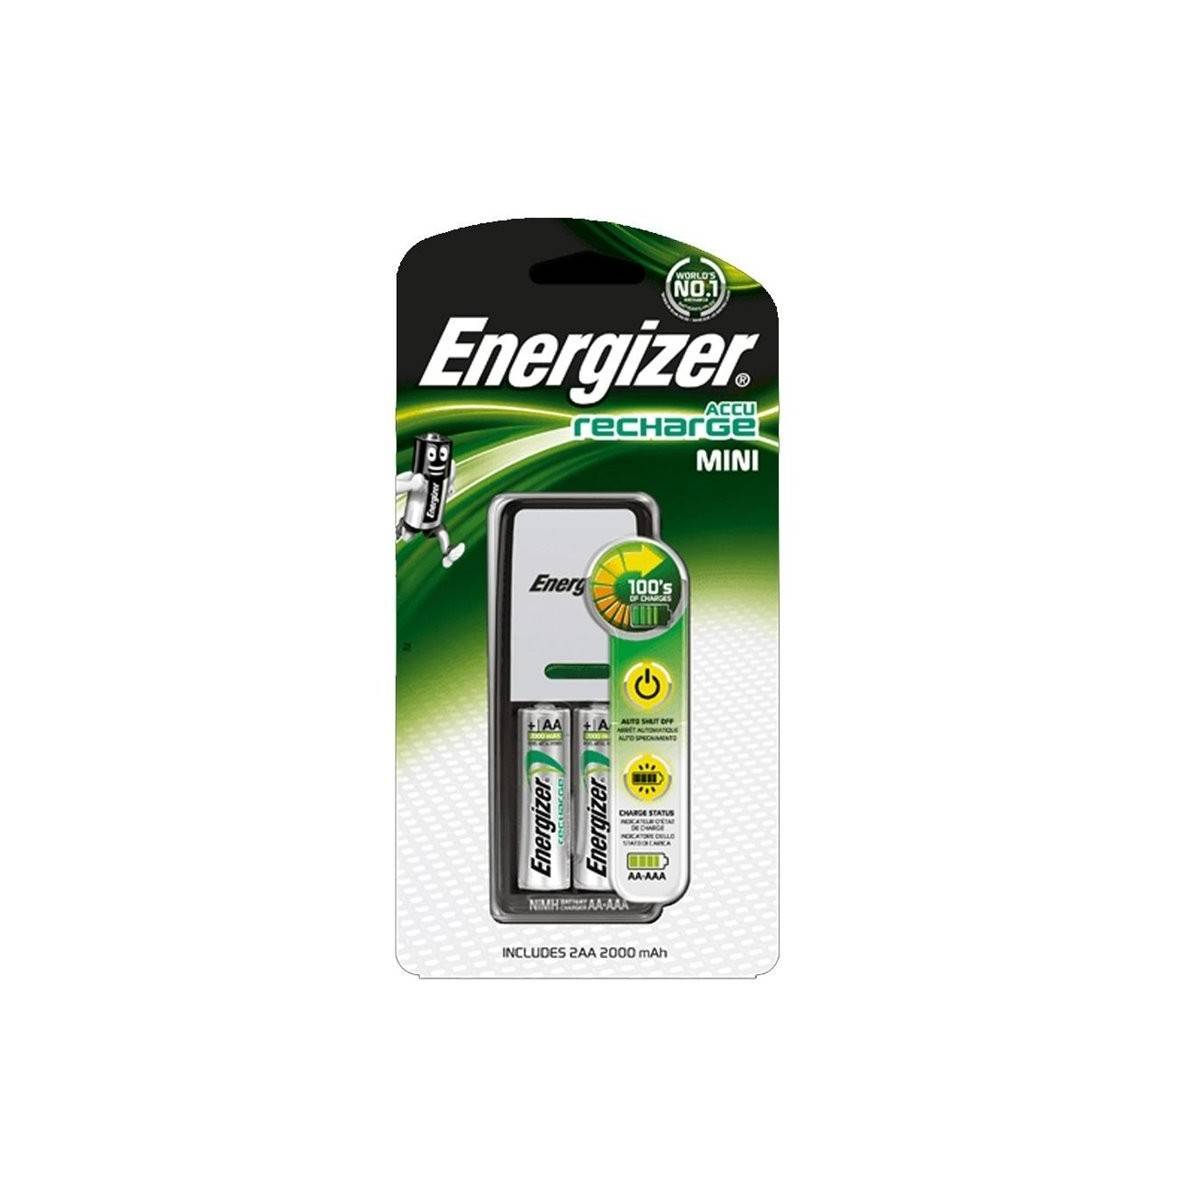 Cargador de Pilas Energizer 2 HR03 (AAA)  700mAh con 2 pilas incluidas